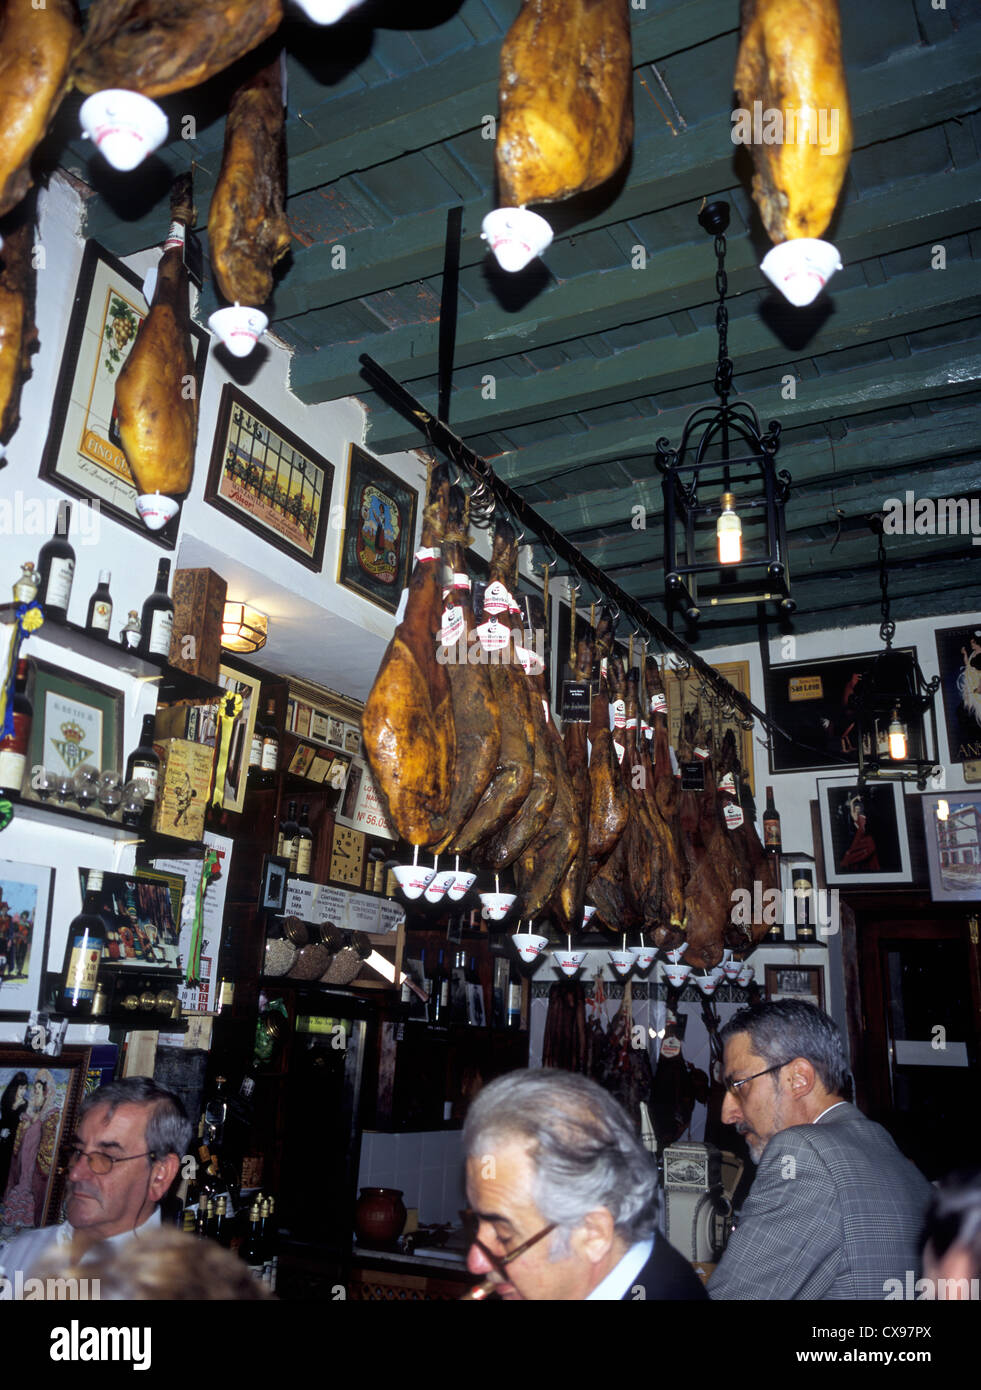 Spagna, Andalusia Siviglia, street cafe intorno al Barrio de Santa Cruz, interno con carni appese. Foto Stock